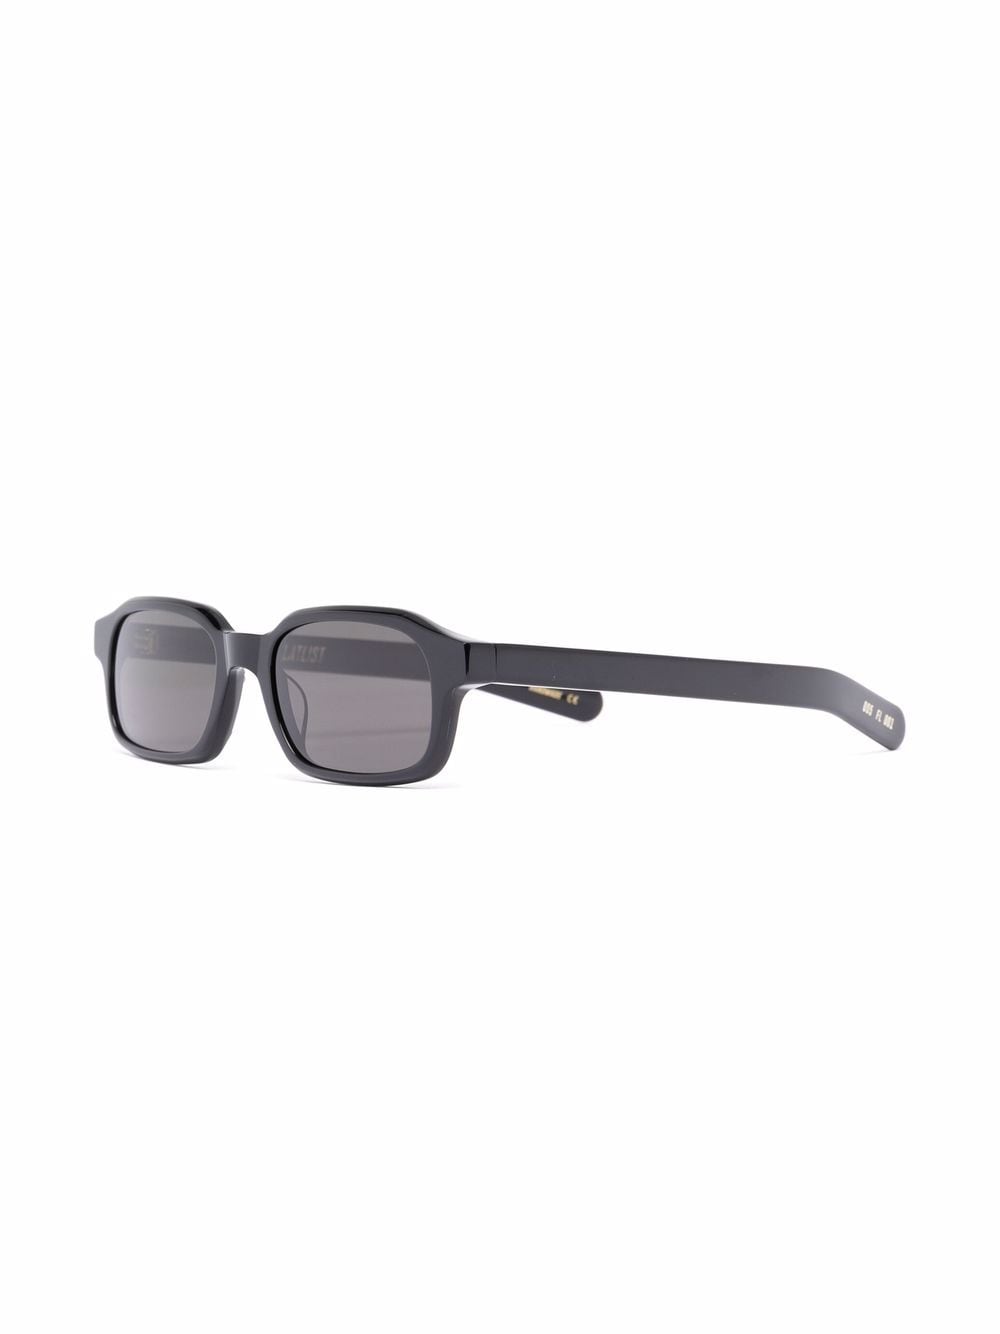 FLATLIST Hanky zonnebril met rechthoekig montuur - Zwart